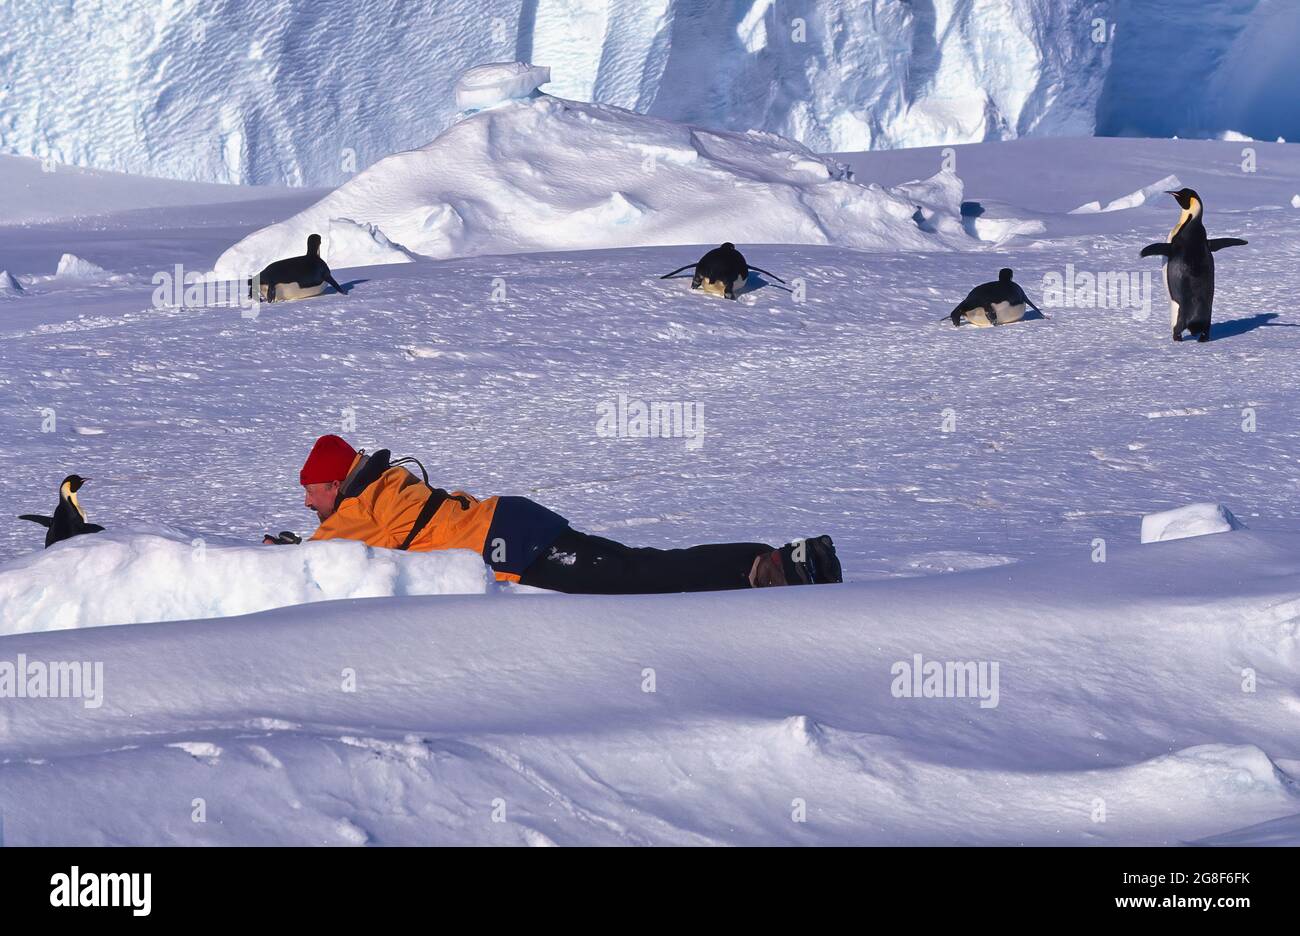 Tourist lying on ice in front of Emperor Penguin, Drescher Inlet Iceport, Queen Maud Land, Weddell Sea, Antarctica Stock Photo